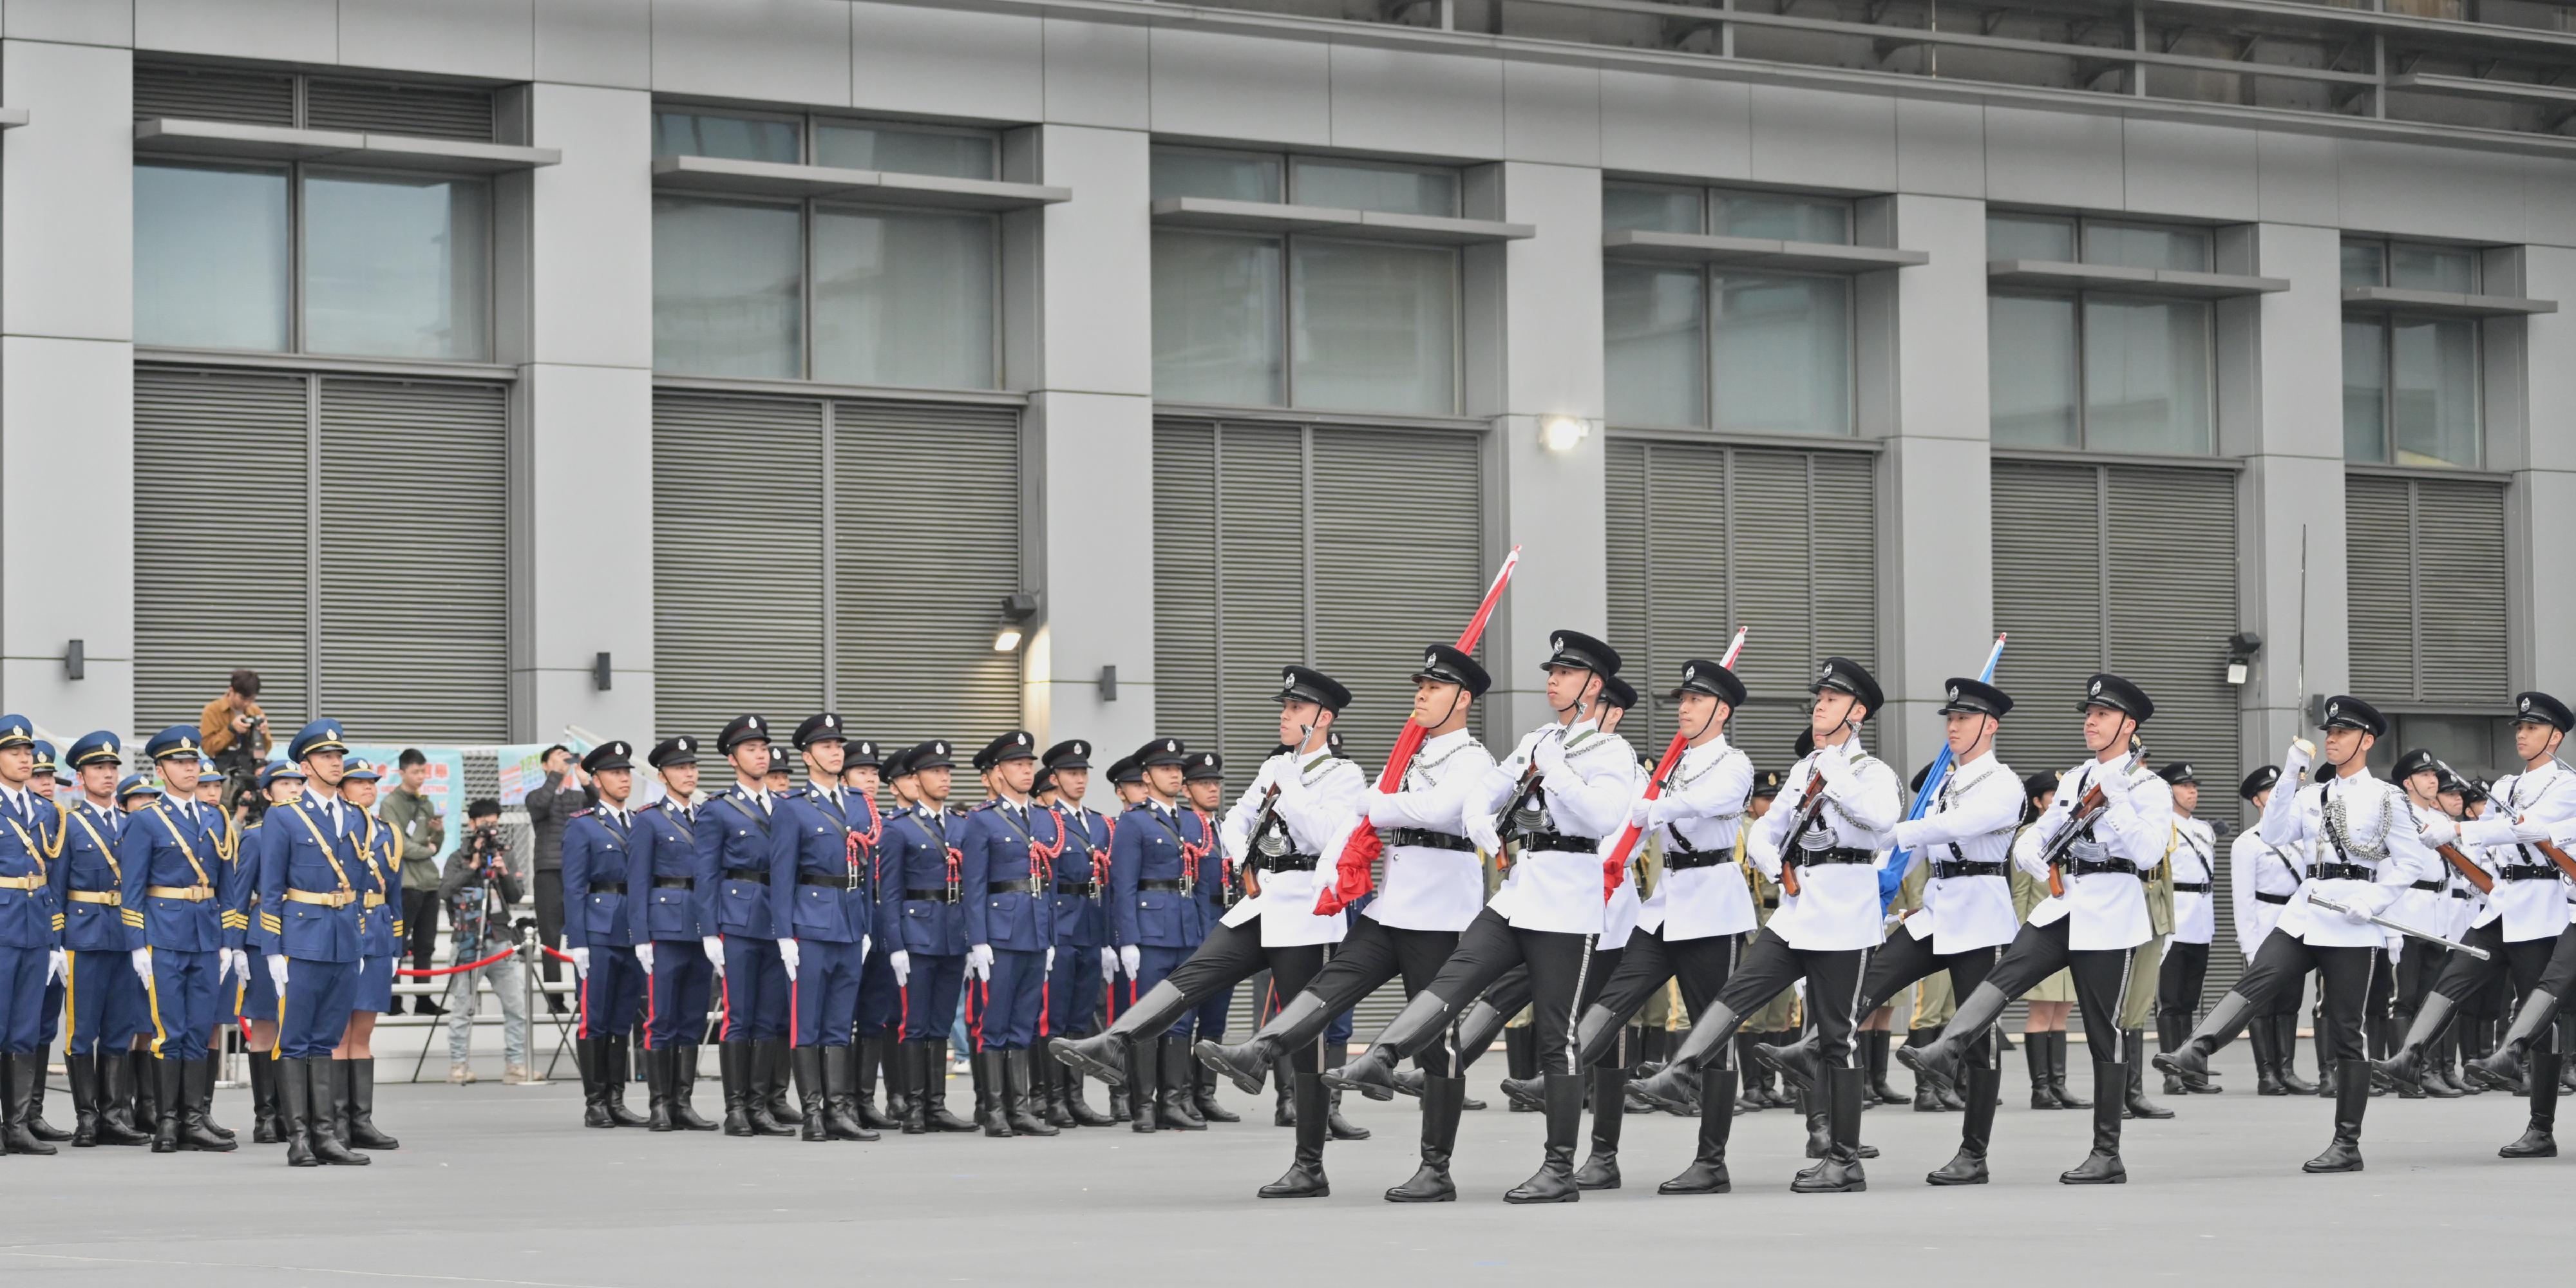 保安局今日（十二月四日）举行国家宪法日升旗仪式。图示纪律部队仪仗队、护旗方队以中式步操进场进行升旗仪式。